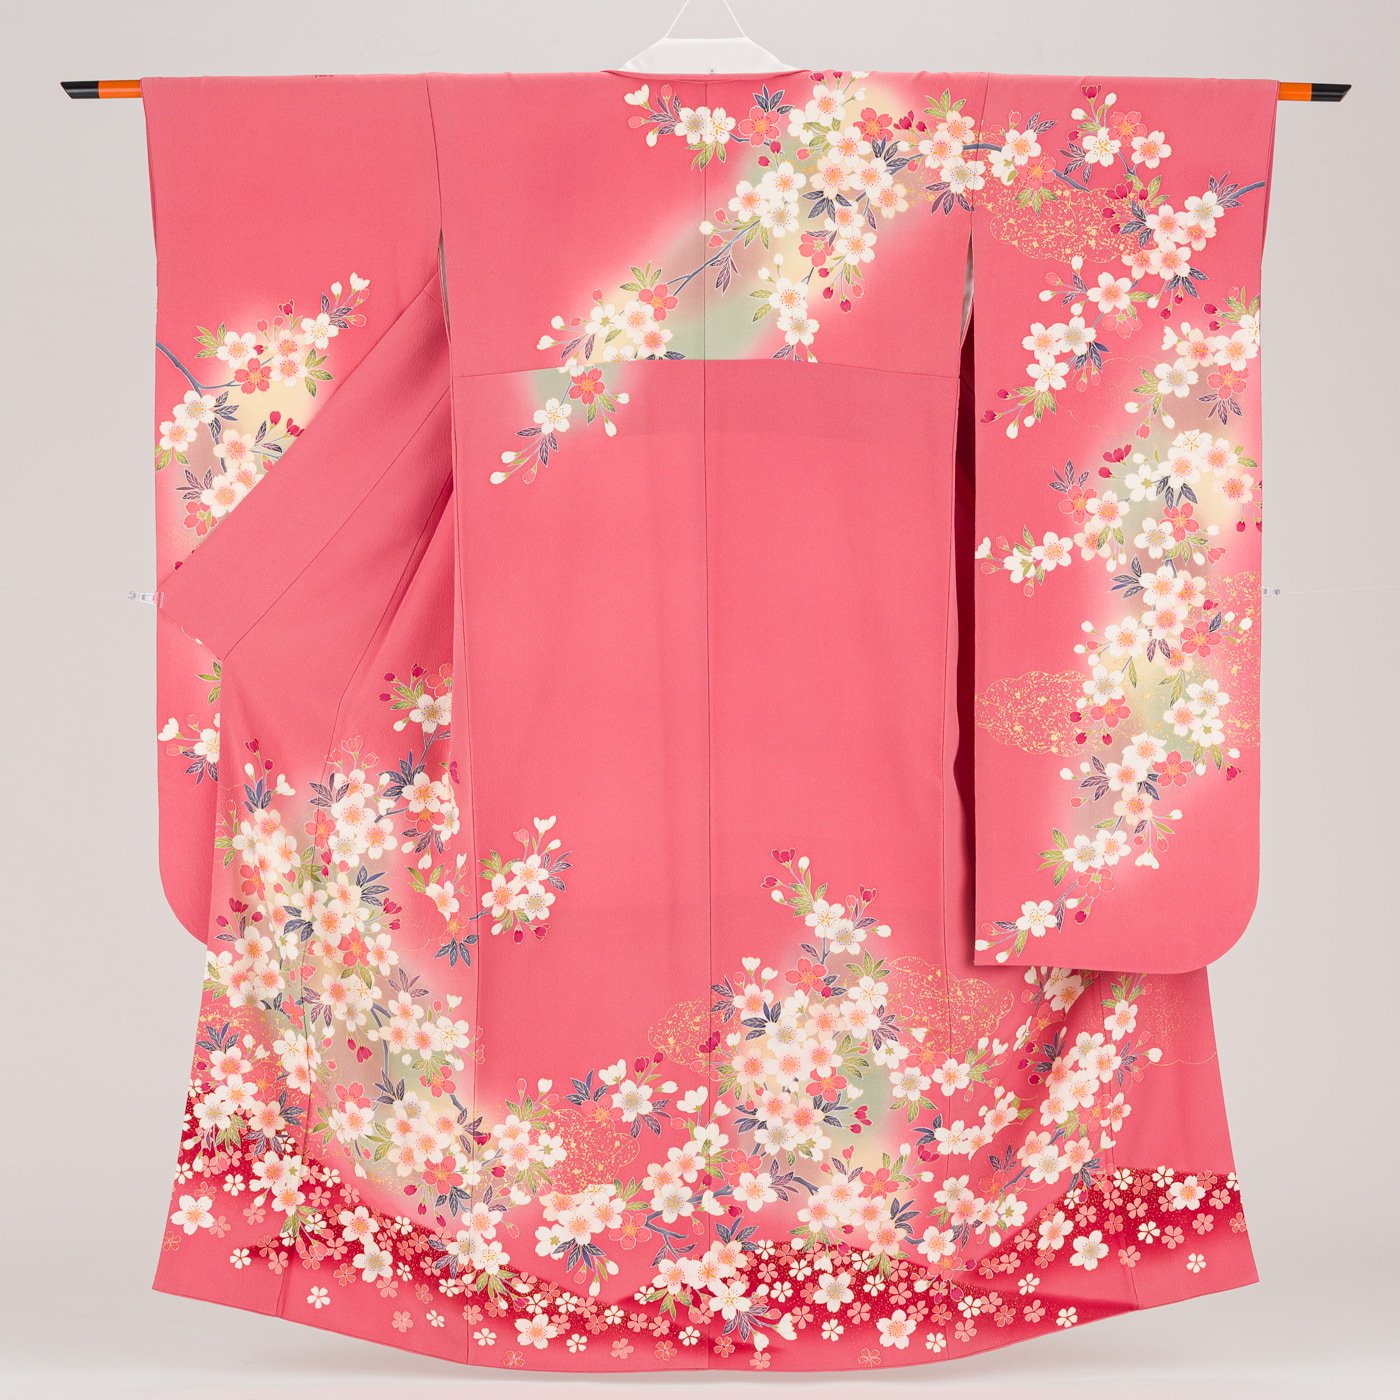 難あり素材絹振袖 まとめ売り 絹 難あり 桜 送料無料 ピンク 素材